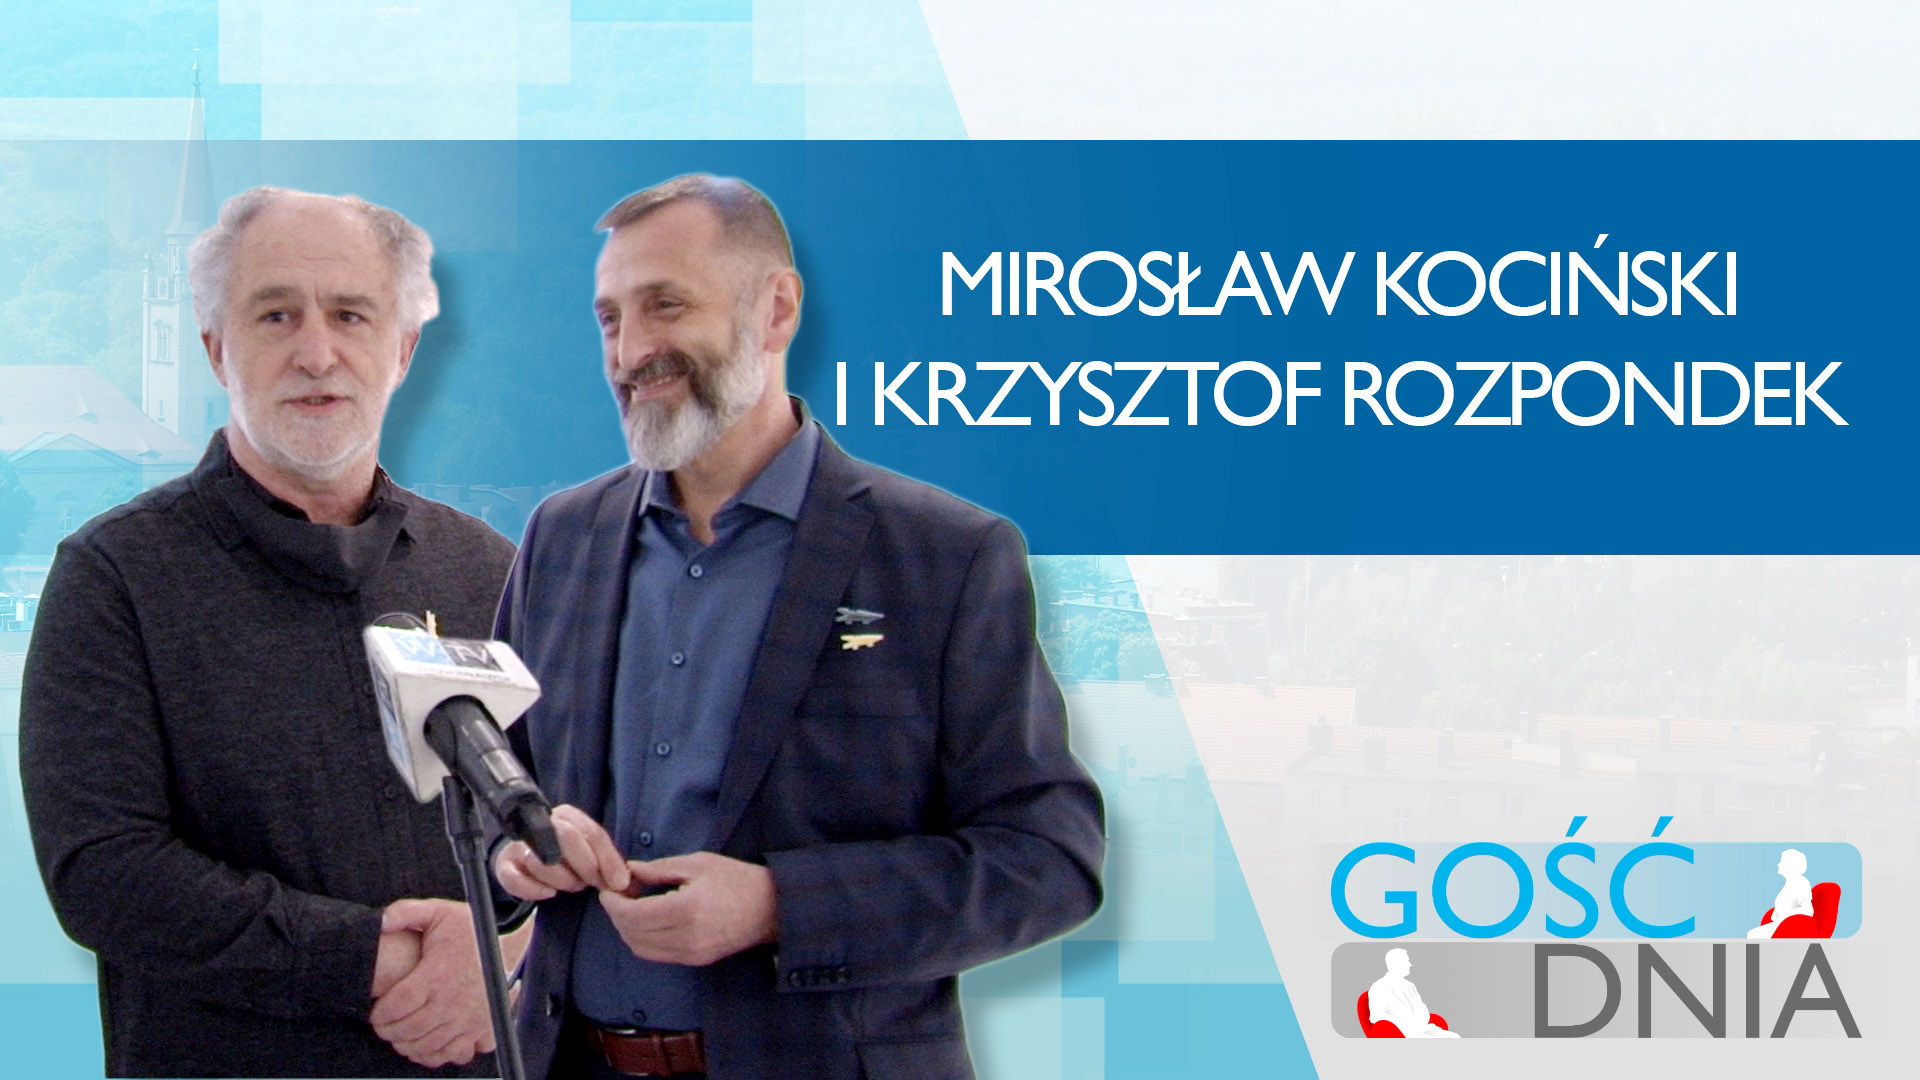 Gość Dnia - Mirosław Kociński i Krzysztof Rozpondek